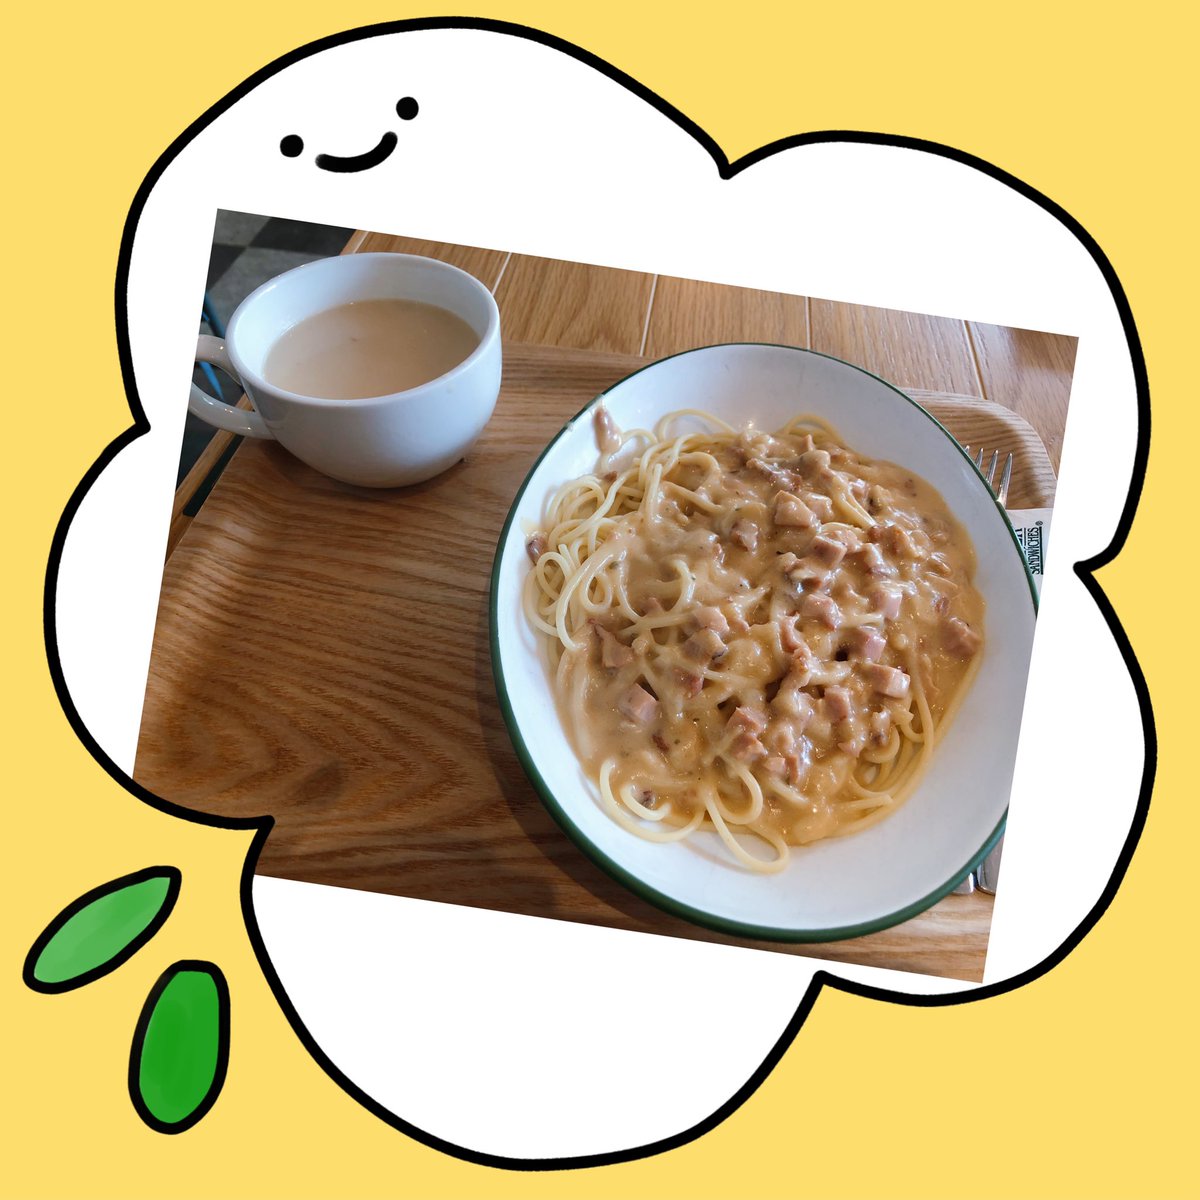 Yummy carbonara spaghetti 💕❤️ #spagetti #foodie #enjoyfood #food